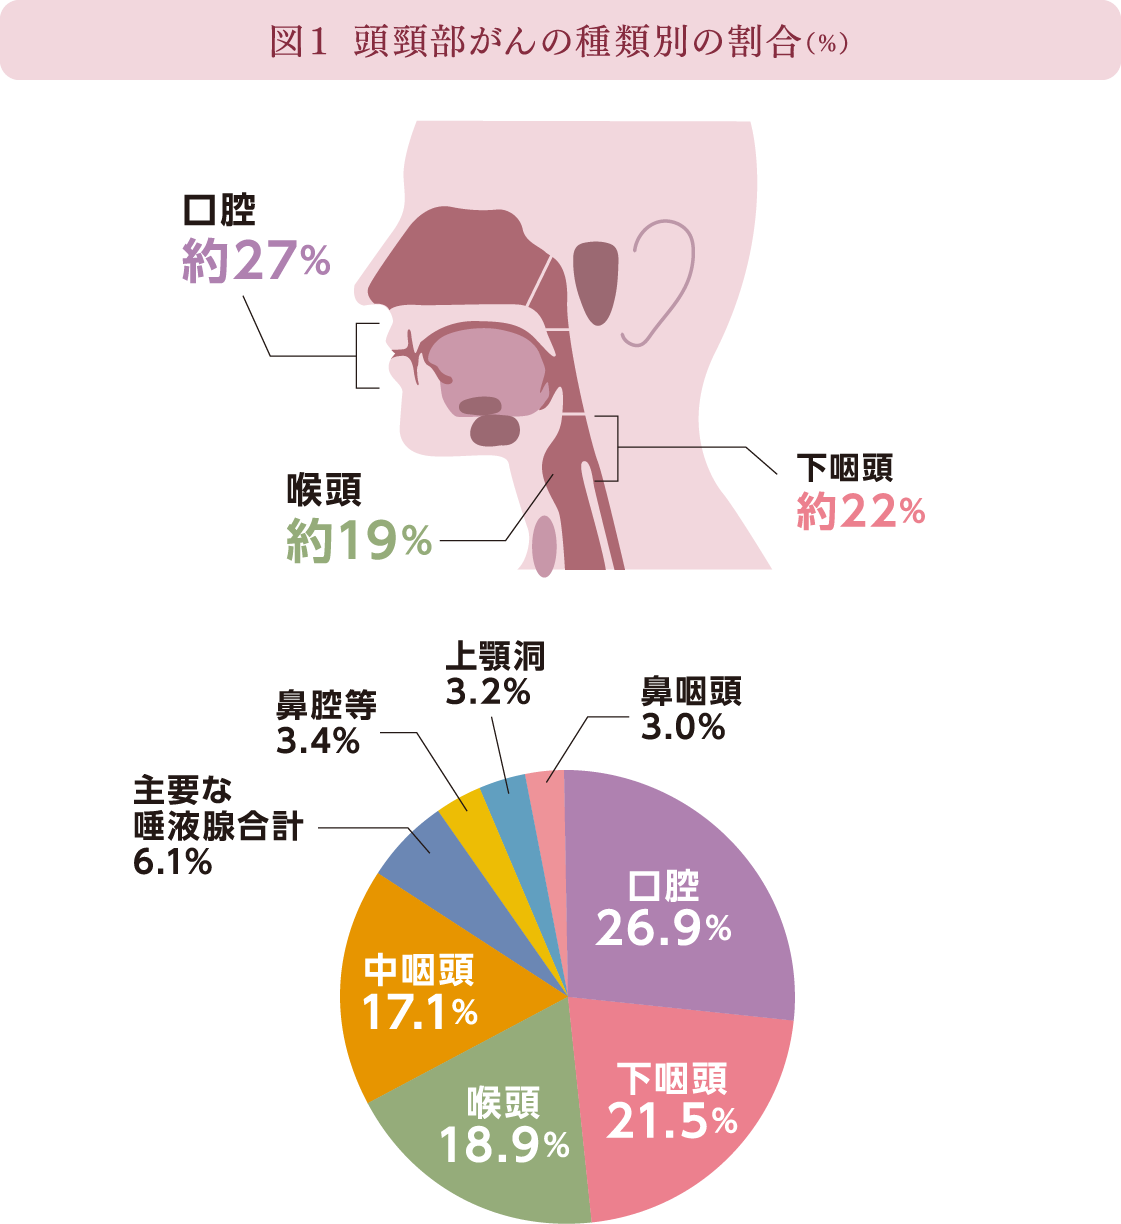 図１ 頭頸部がんの種類別の割合(%)